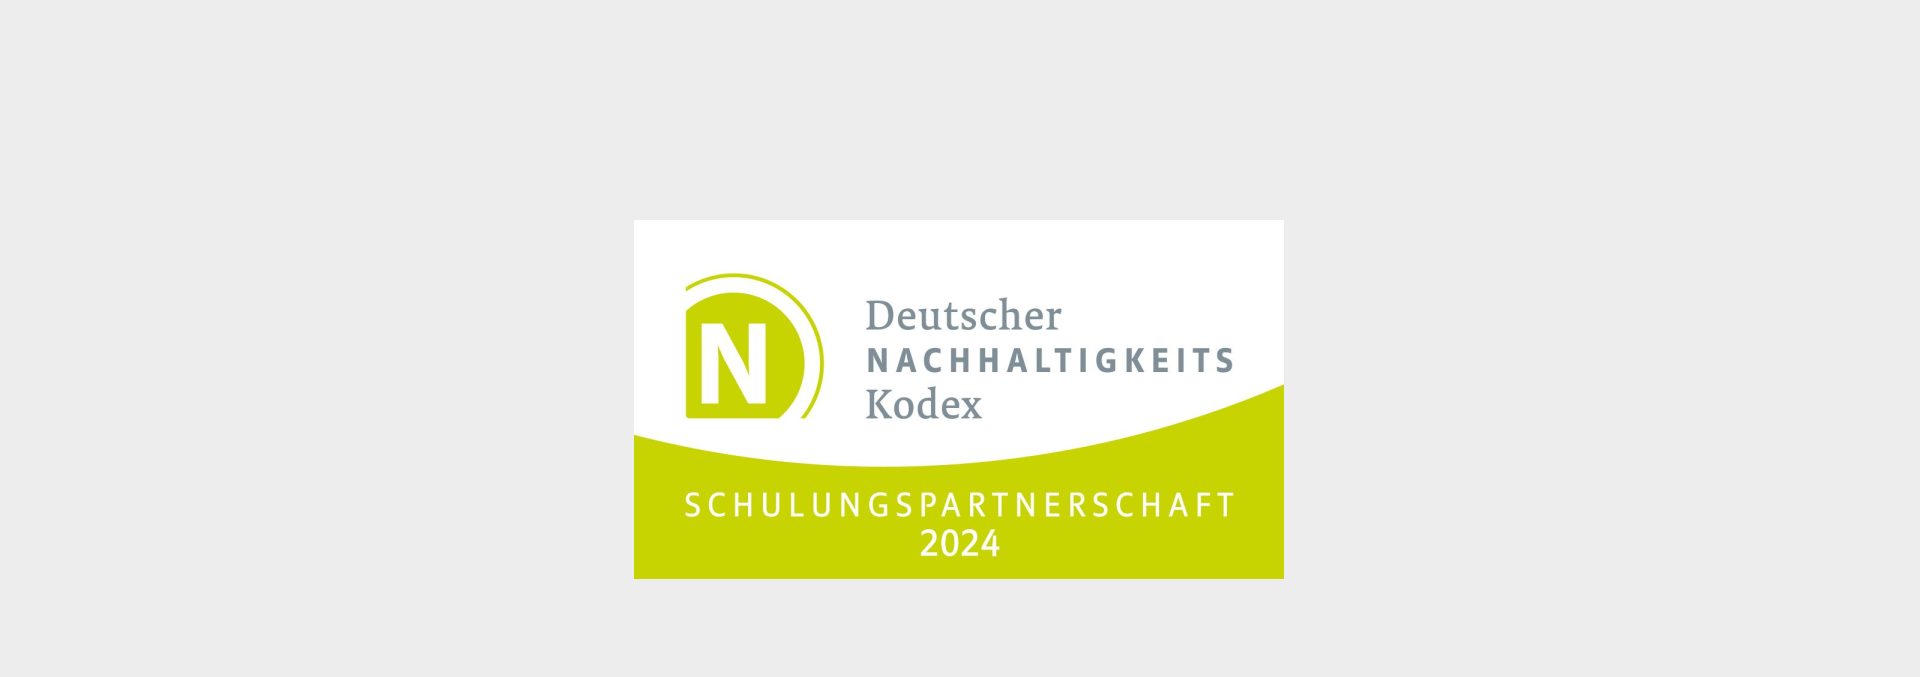 Deutscher Nachhaltigkeit Kodex